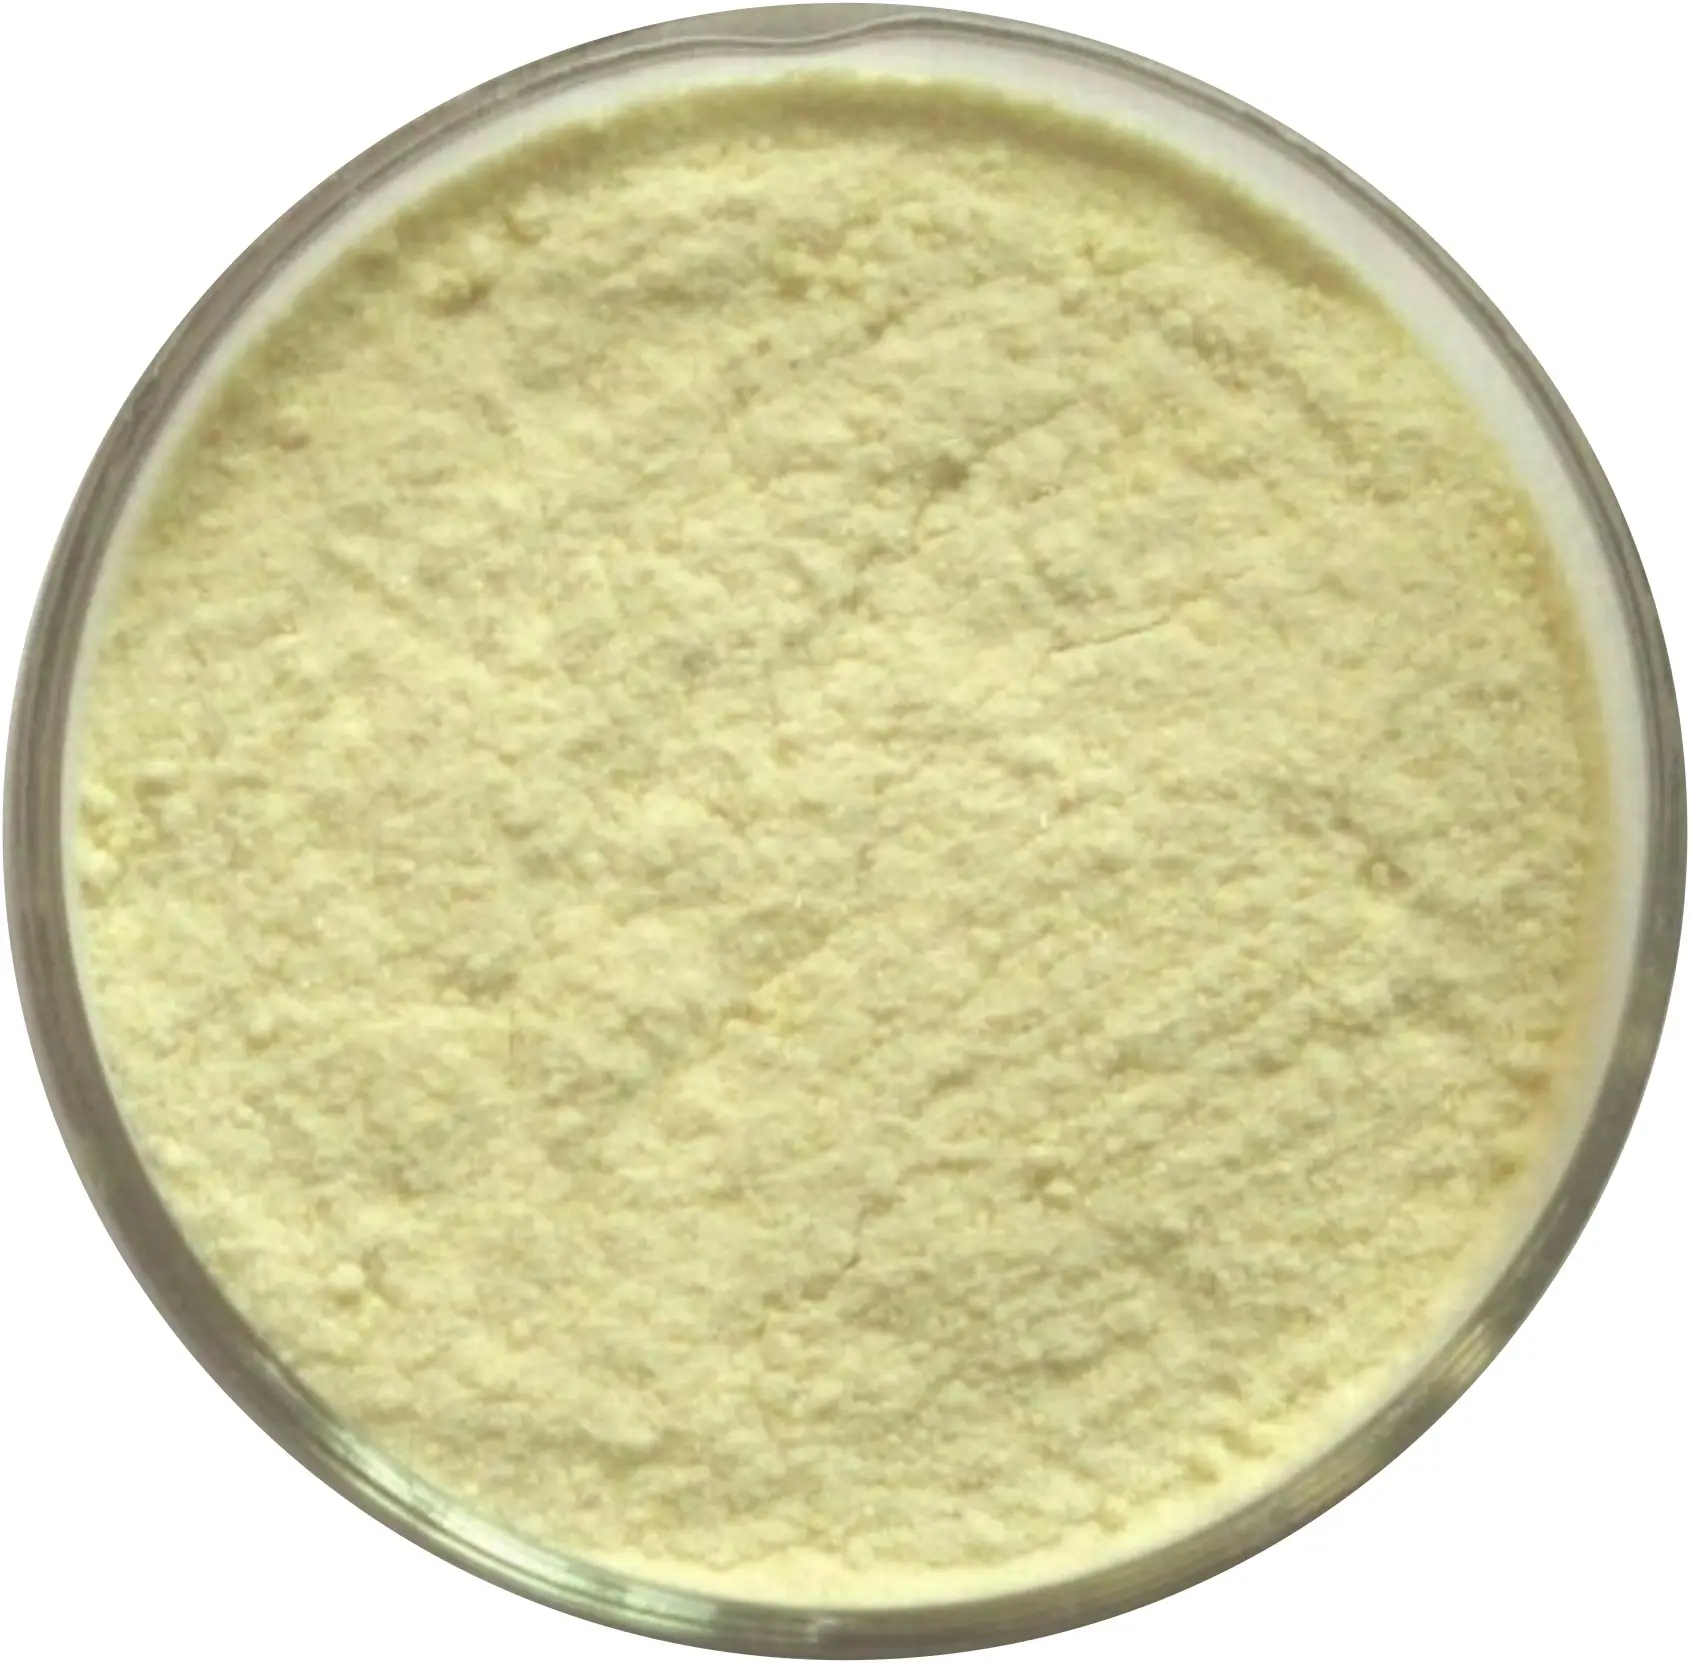 उच्च गुणवत्ता वाले फ्यूरान-2,5-डिकैर्बाल्डिहाइड सीएएस संख्या 823-82-5